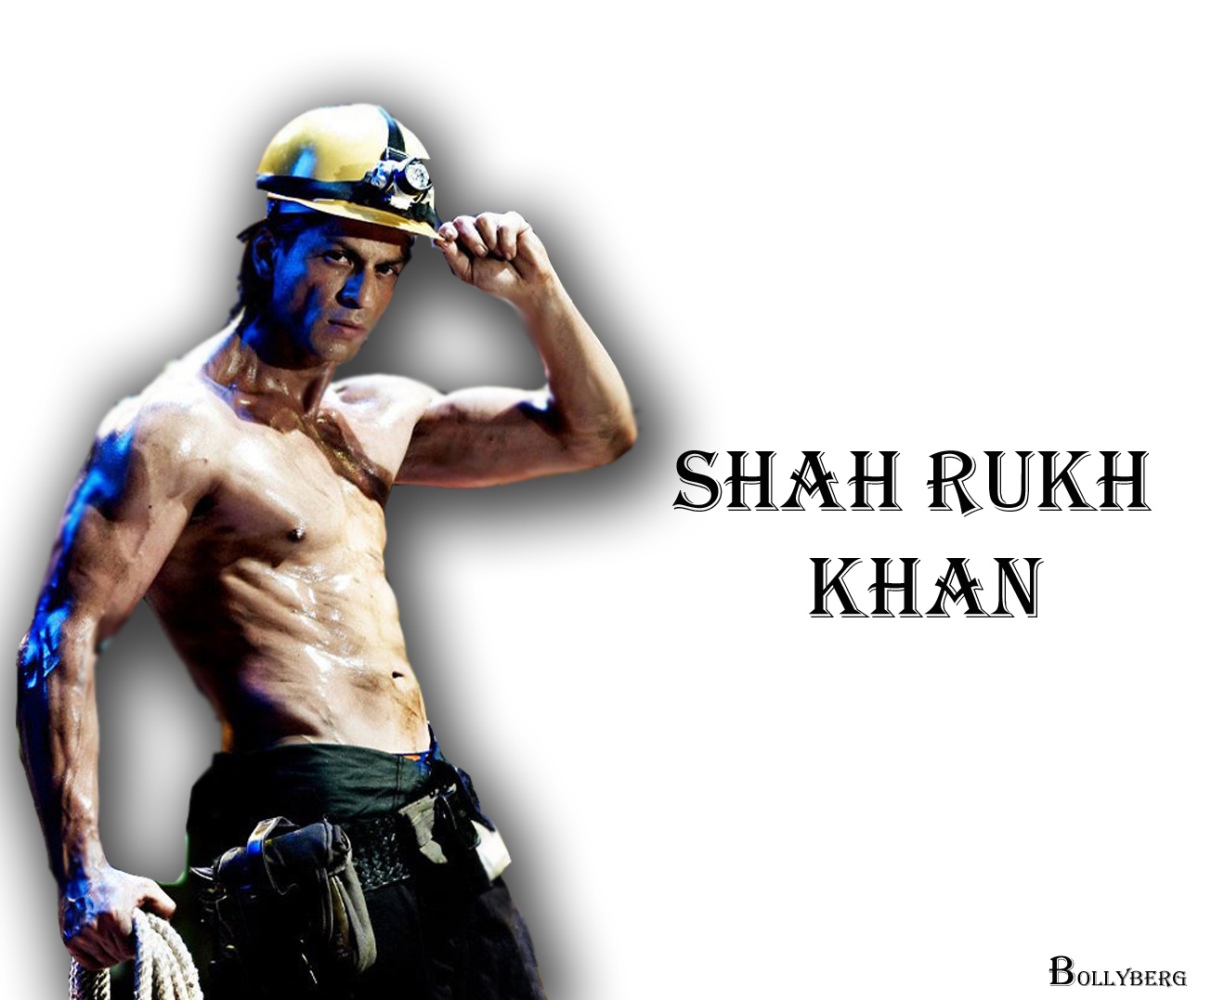 Best Shahrukh Khan 6 Packs Wallpaper, Shahrukh Khan - Barechested , HD Wallpaper & Backgrounds